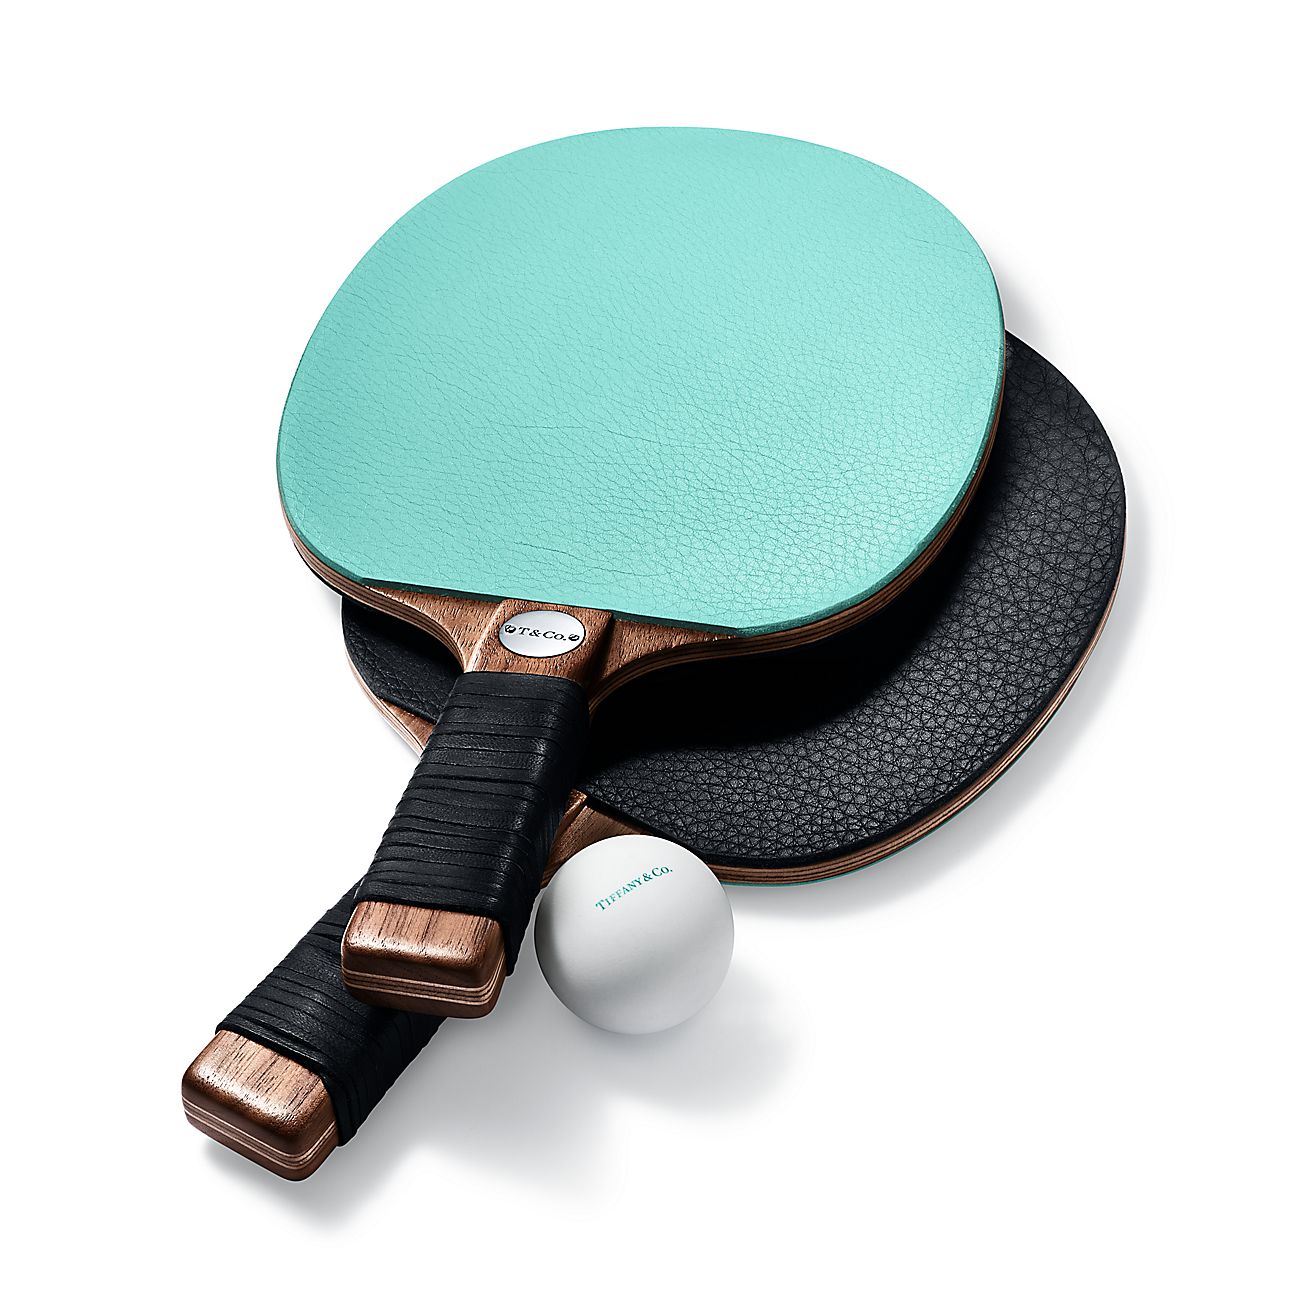 Ping-pong paddles